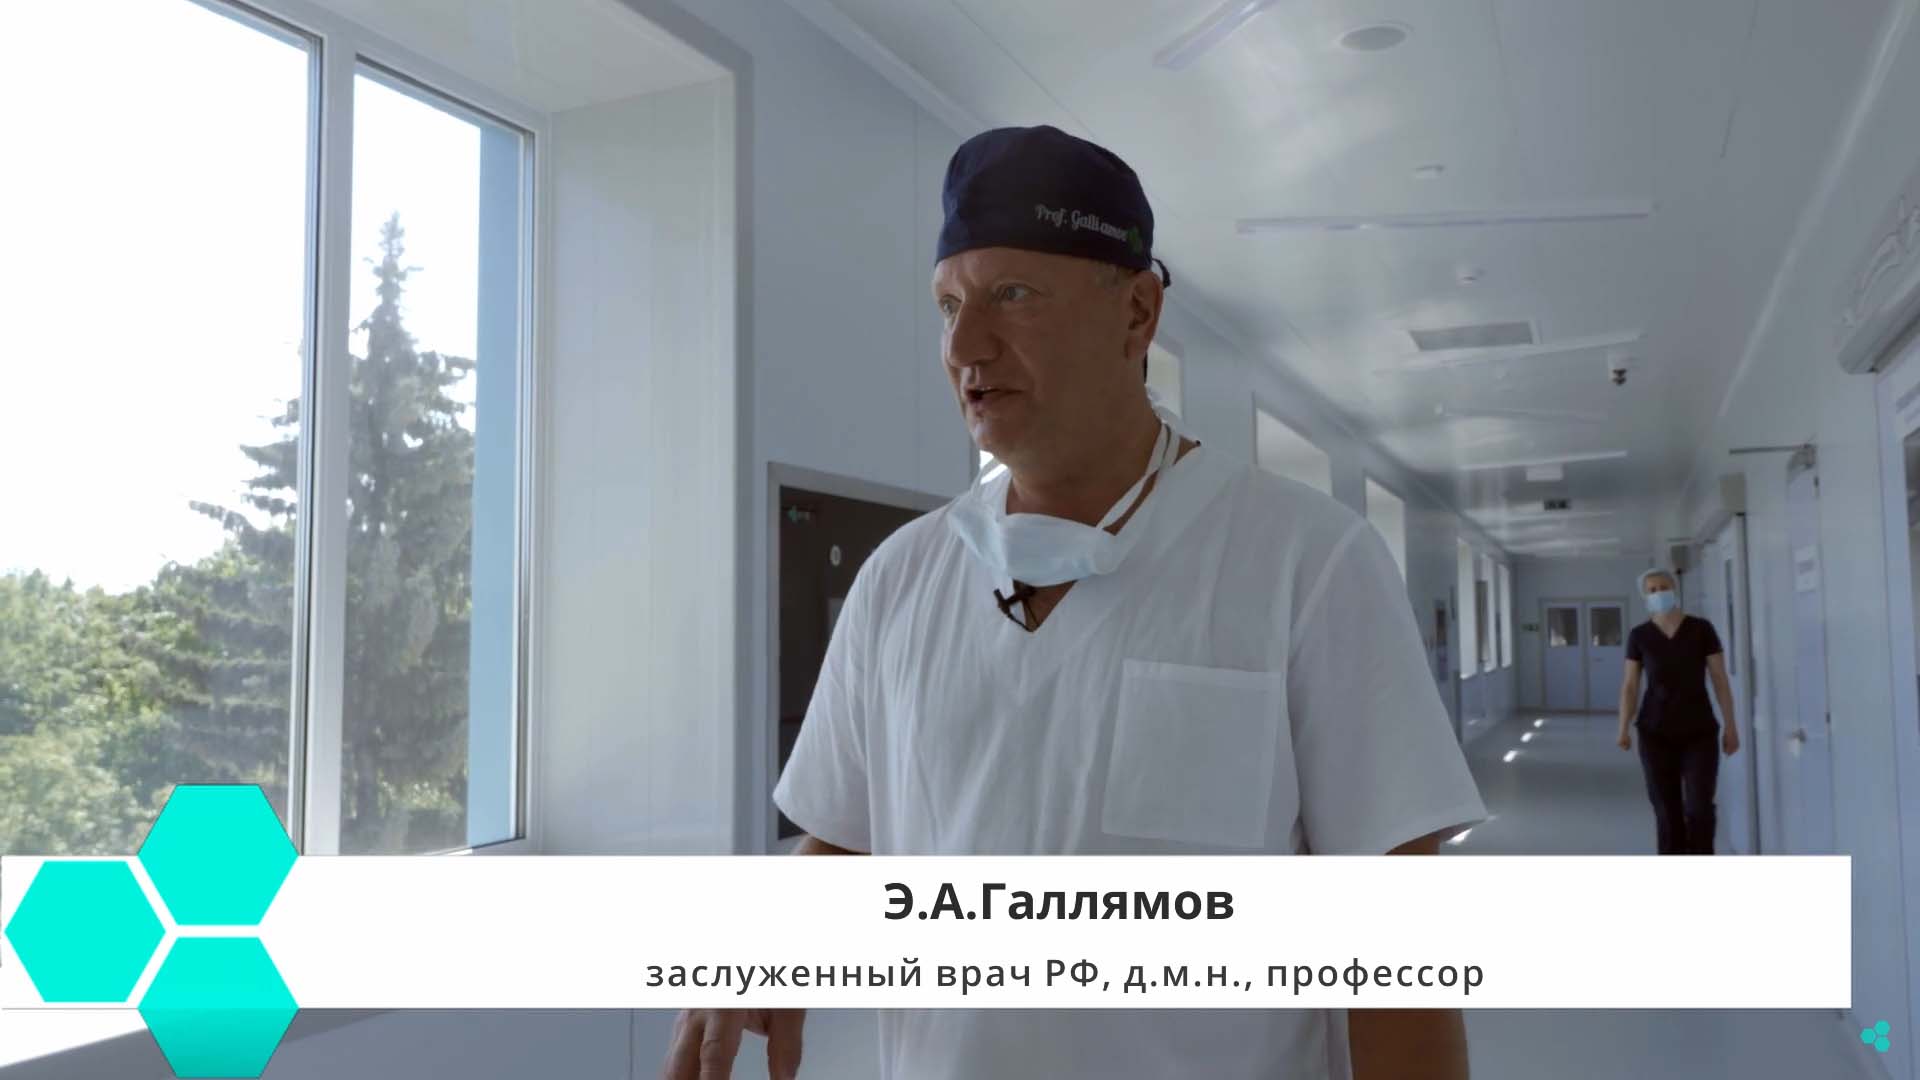 Заслуженный врач РФ Э. А. Галлямов делится впечатлениями об Умной операционной MVS